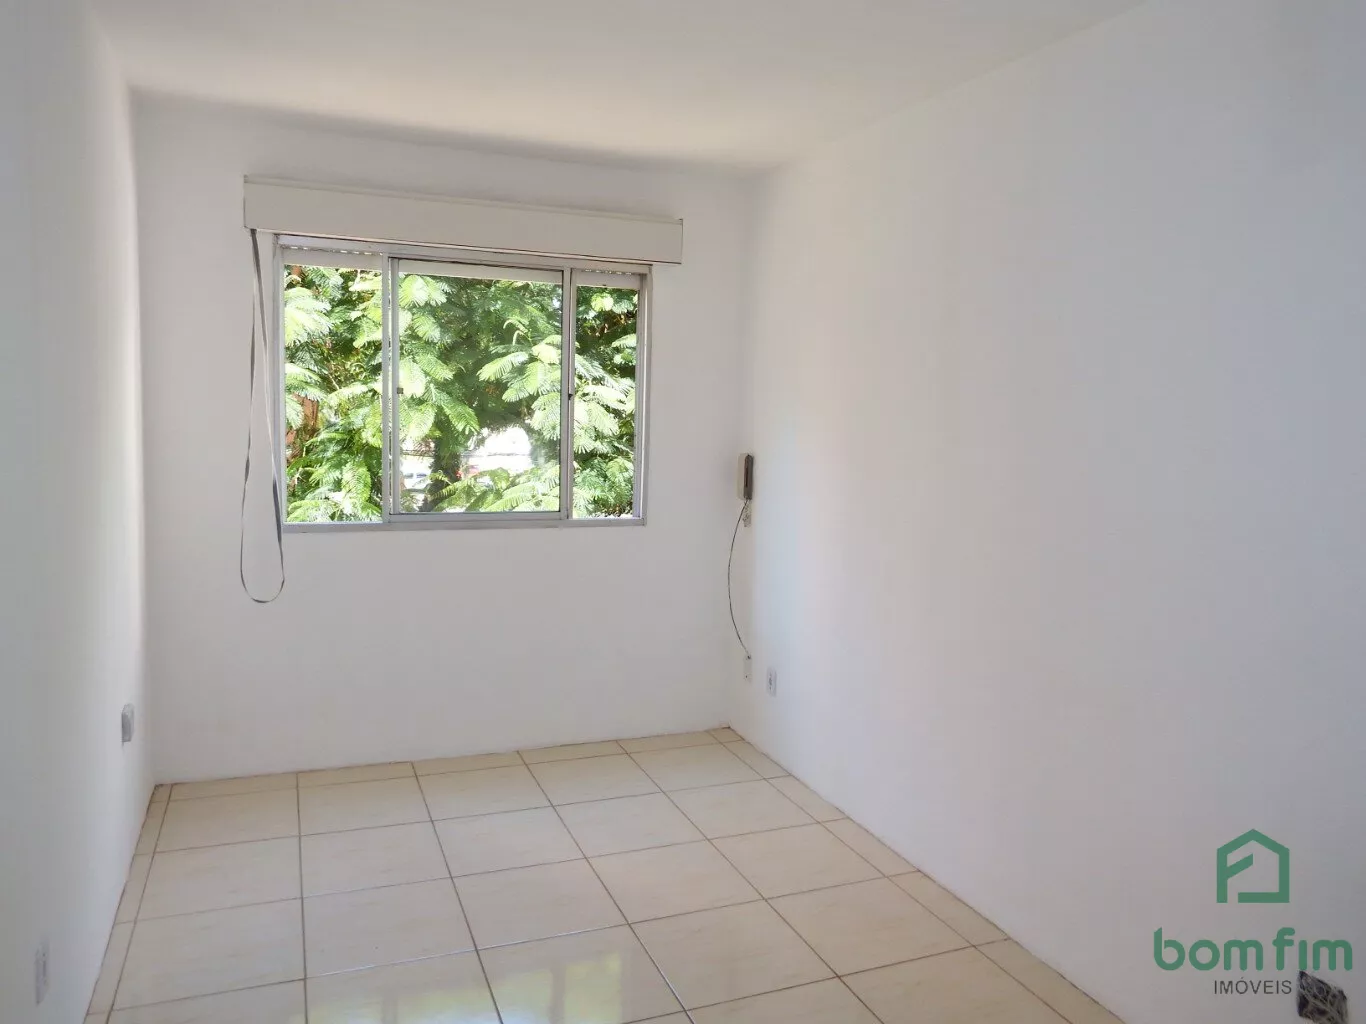 Apartamento em Cristal, Porto Alegre/RS de 45m² 1 quartos para locação R$ 800,00/mes